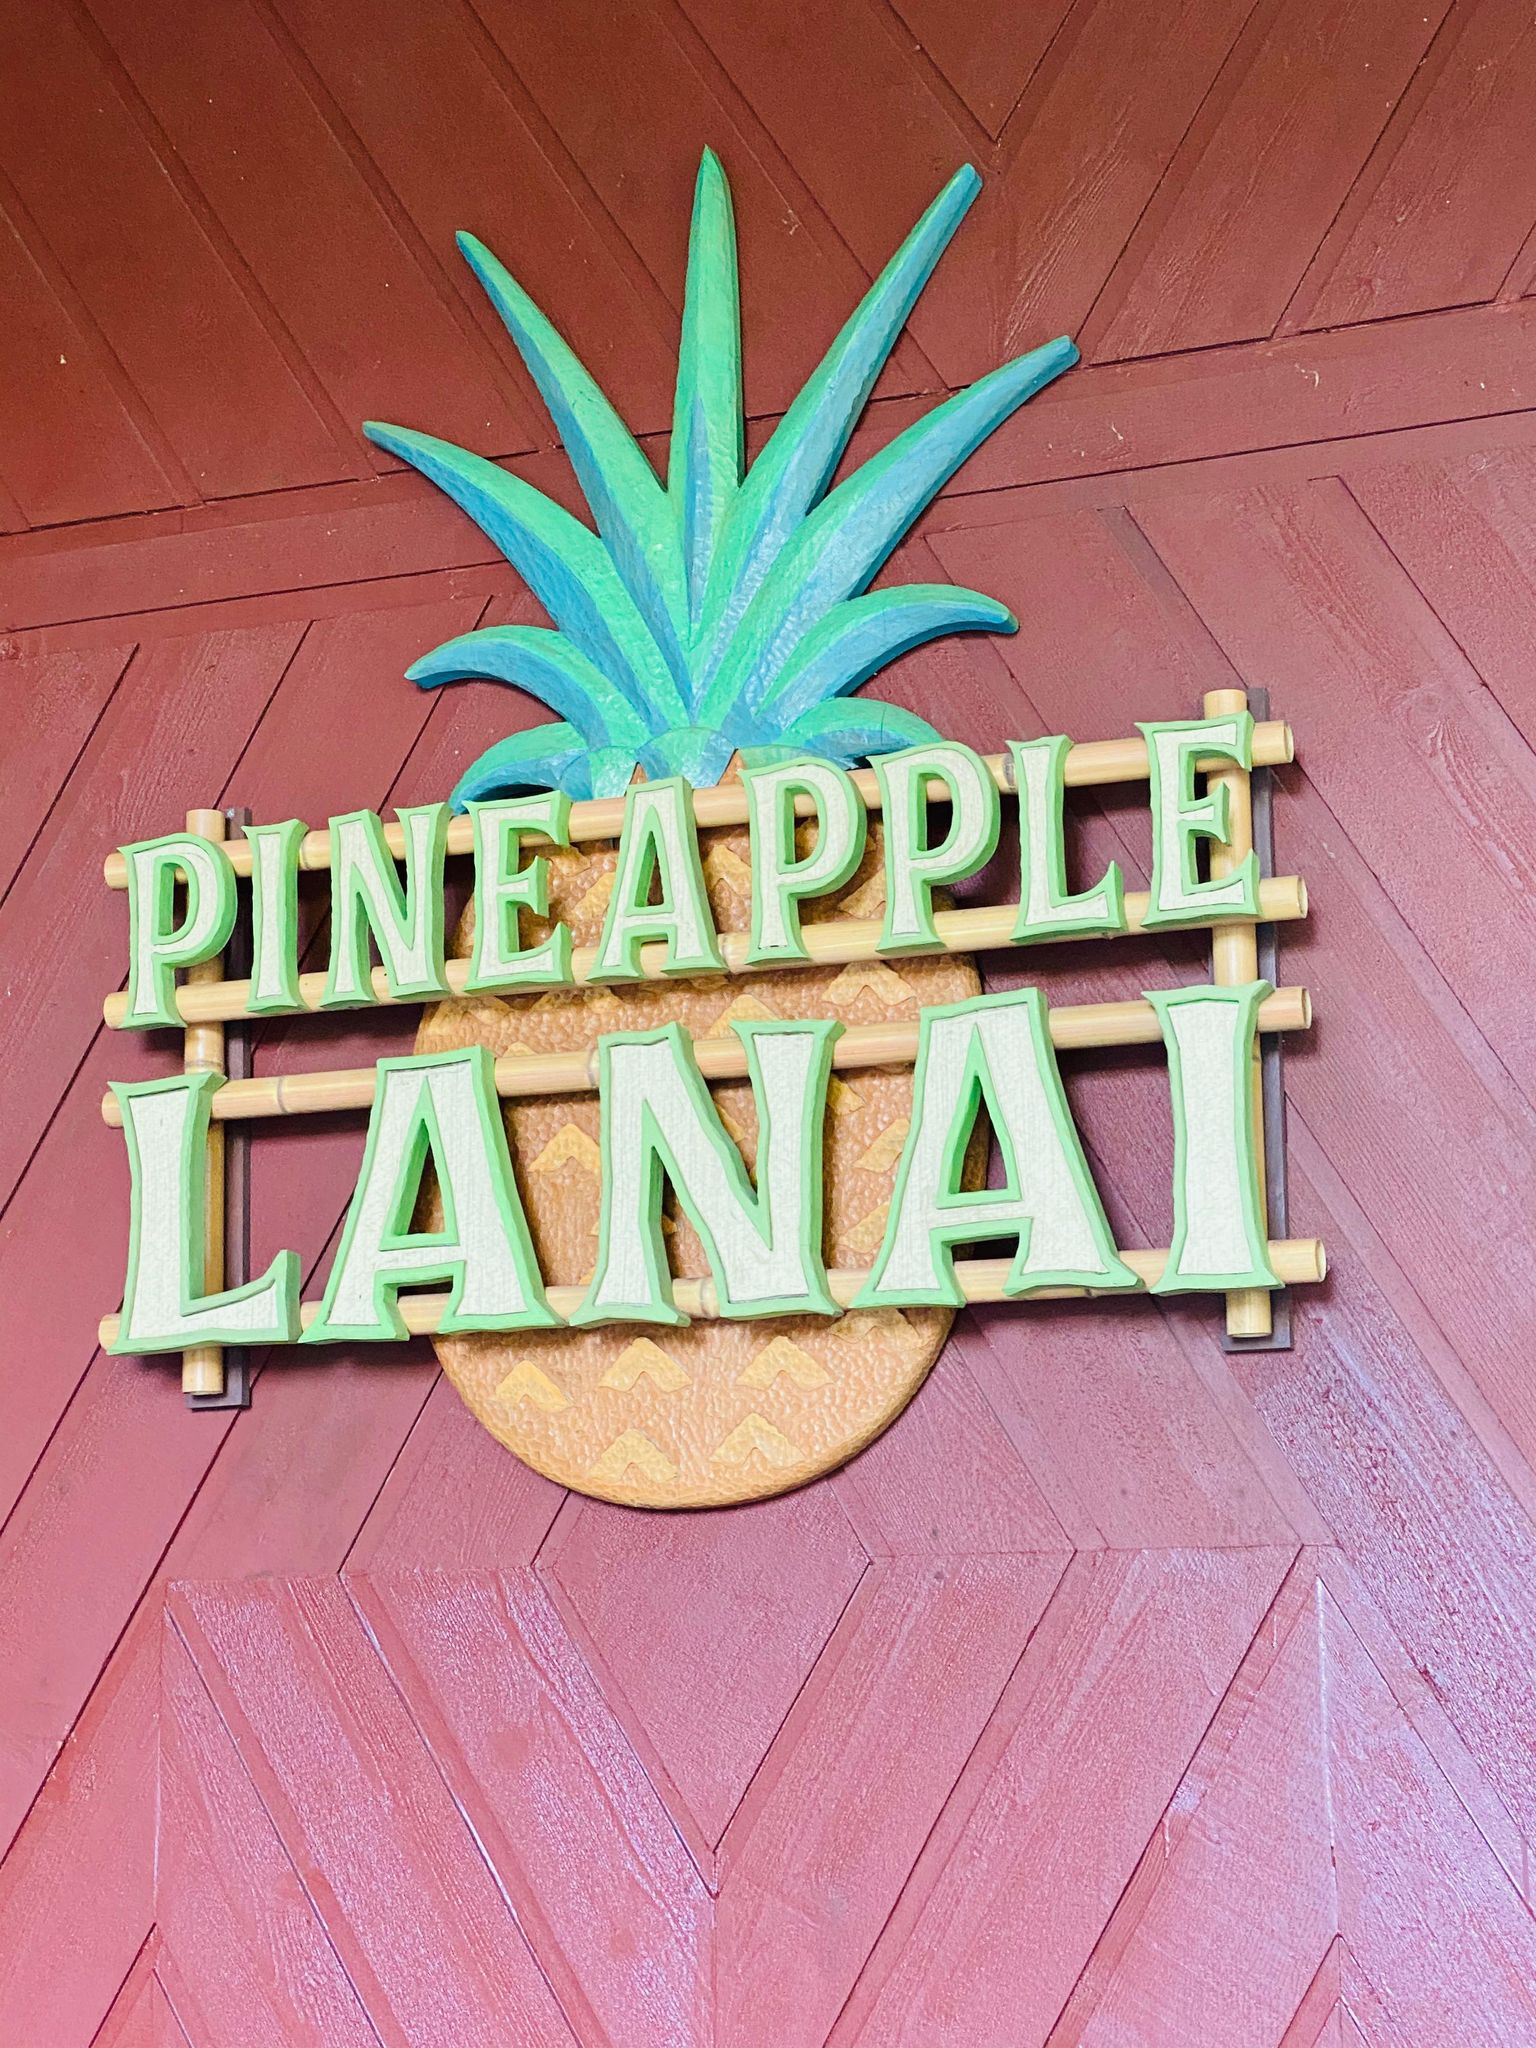 Pineapple Lanai 